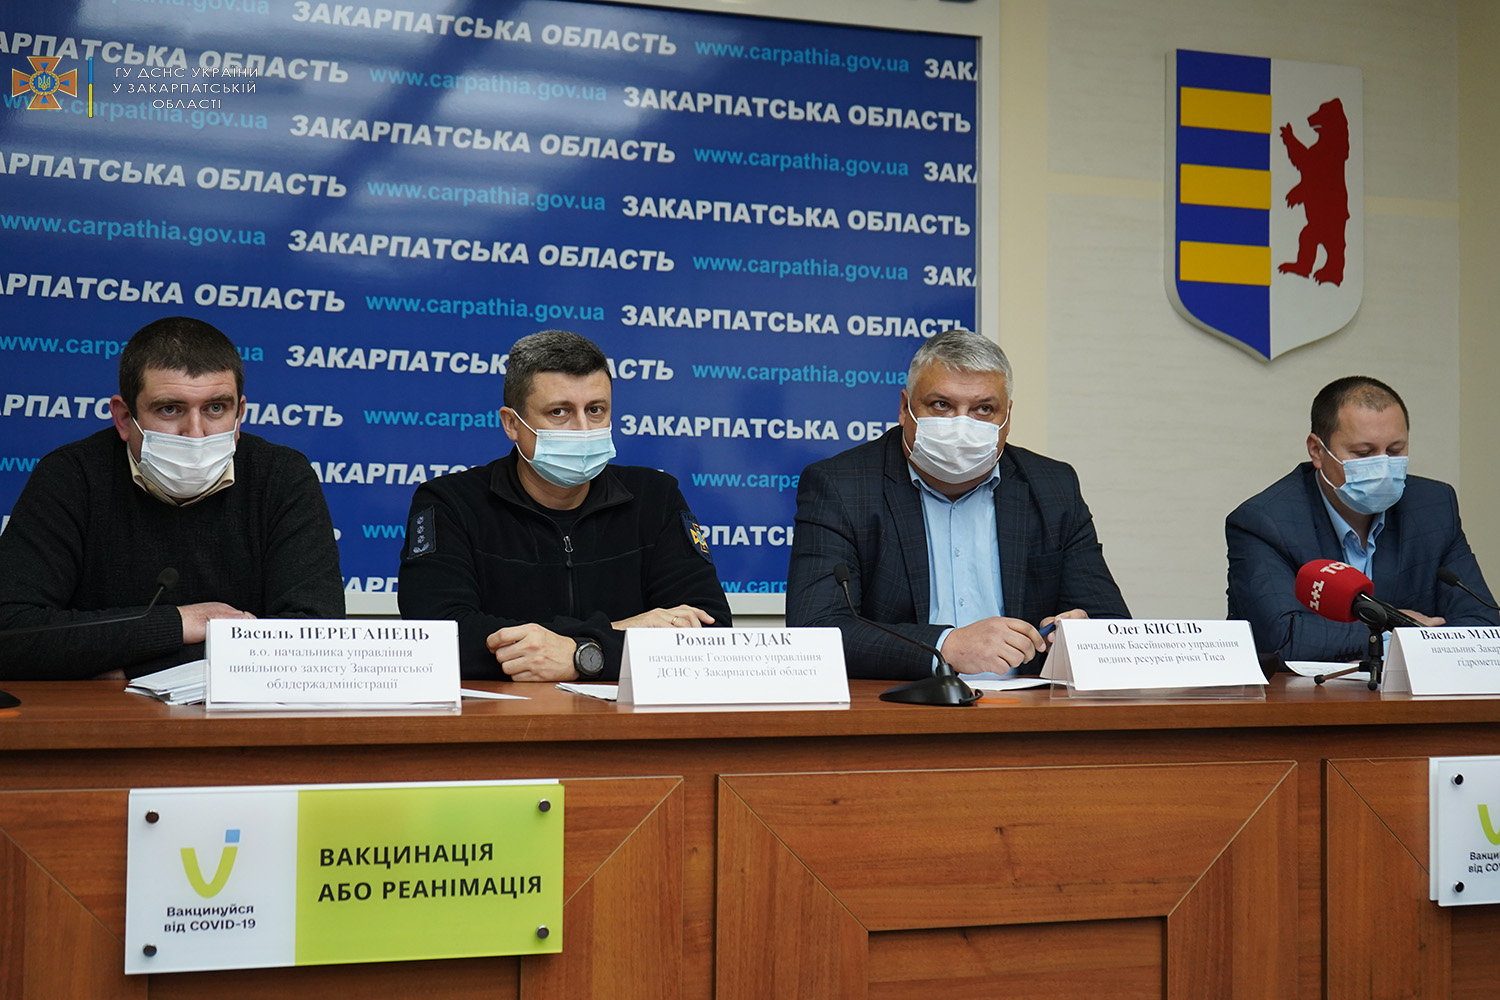 Сегодня, 6 января, в Закарпатской областной государственной администрации состоялся брифинг о паводковой ситуации в регионе и ходе работ по ликвидации последствий непогоды.